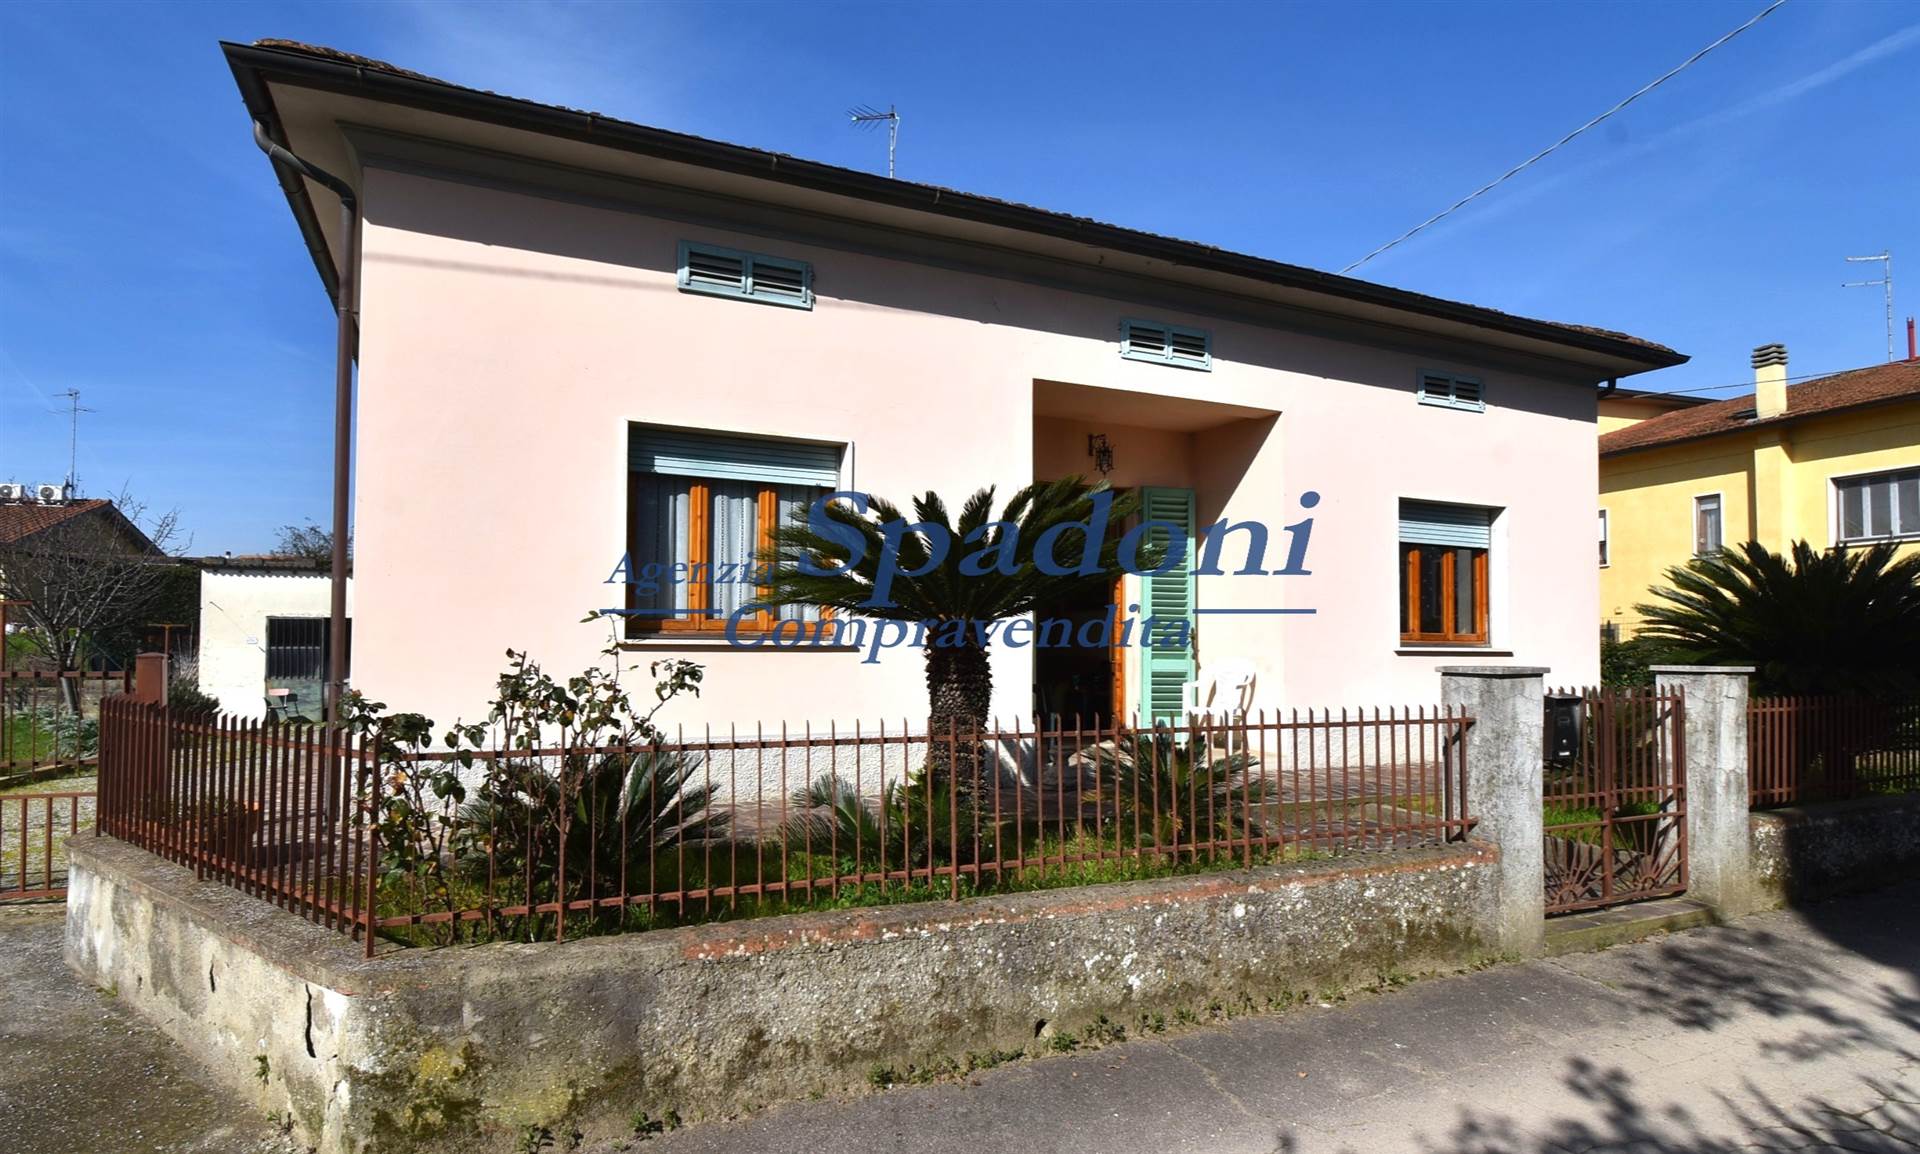 Villa in vendita a Larciano, 6 locali, prezzo € 215.000 | PortaleAgenzieImmobiliari.it